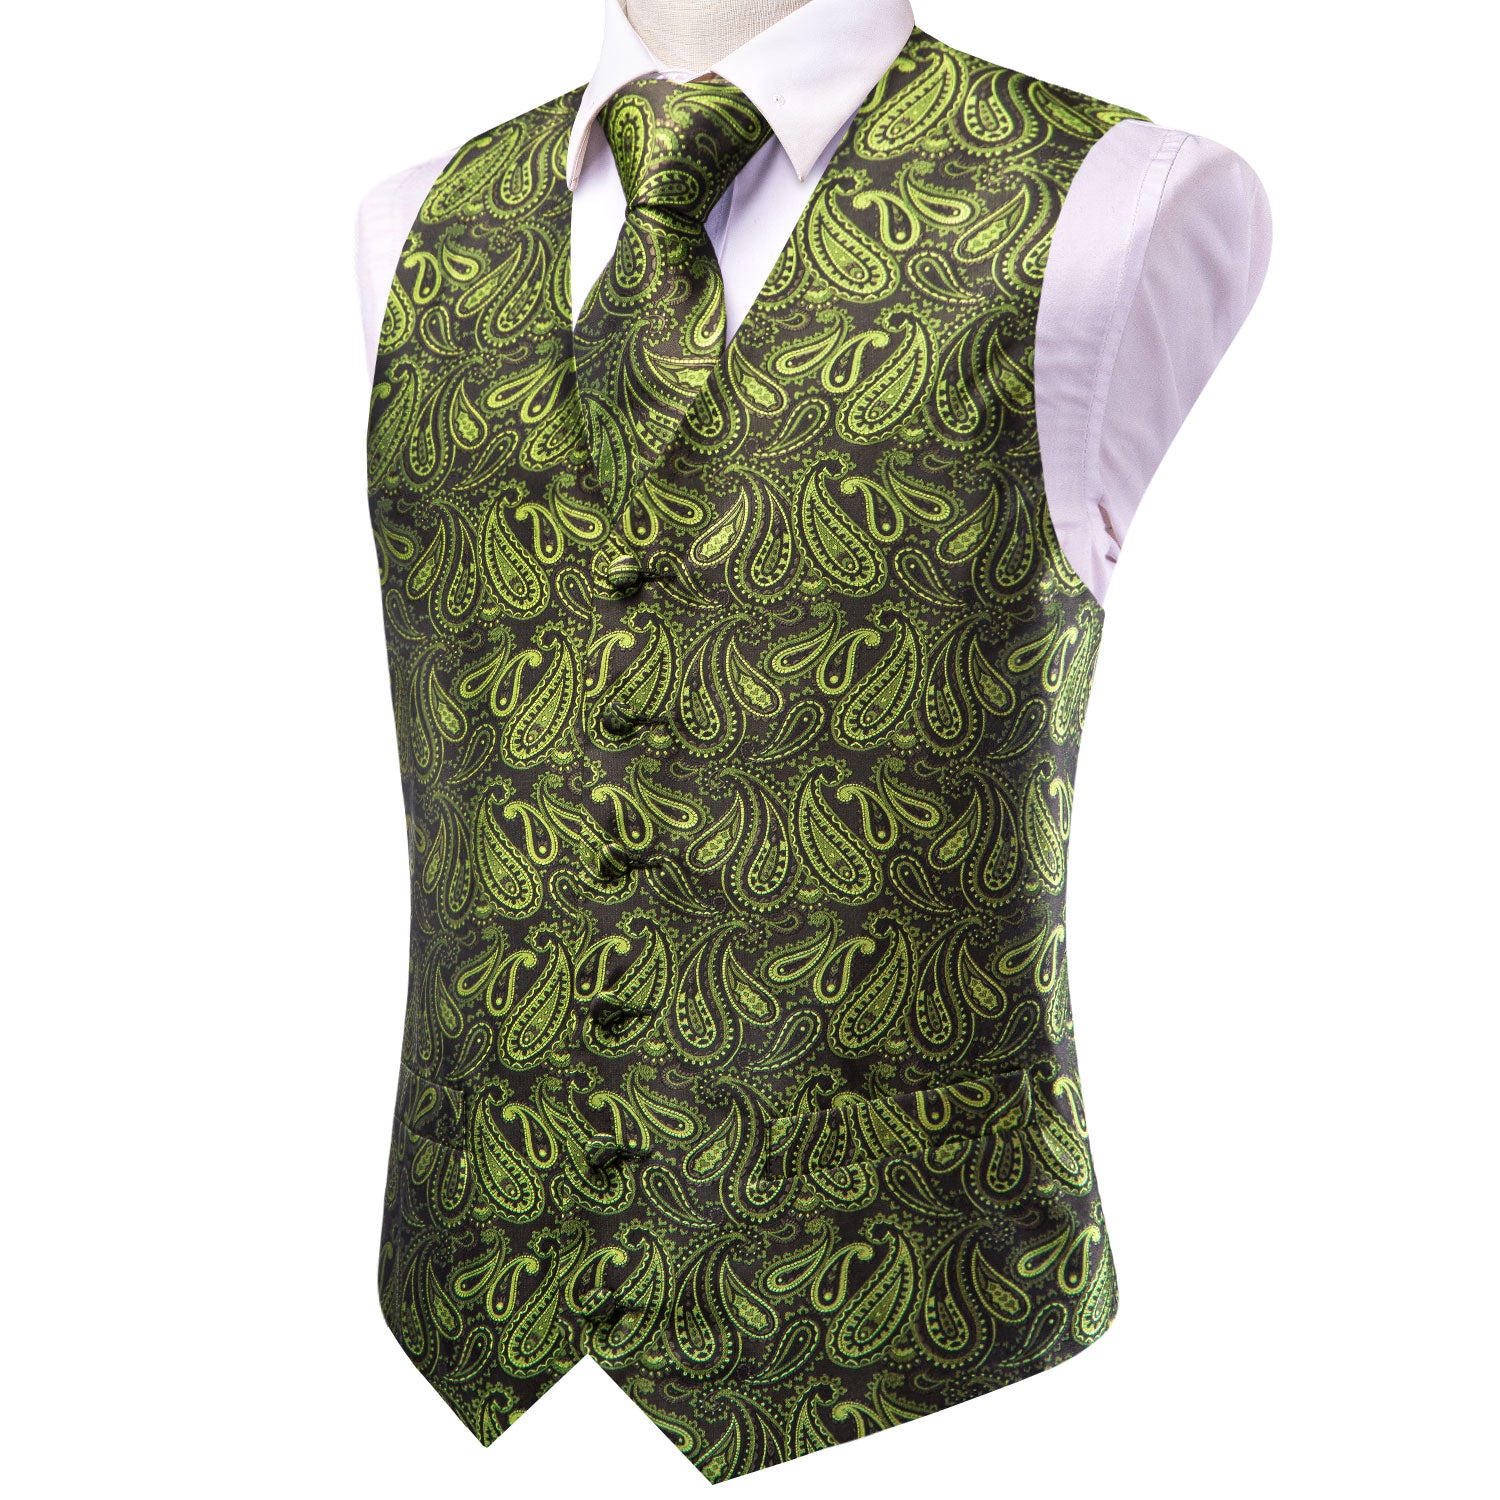 Olive Green Paisley Men's Vest Hanky Cufflinks Tie Set